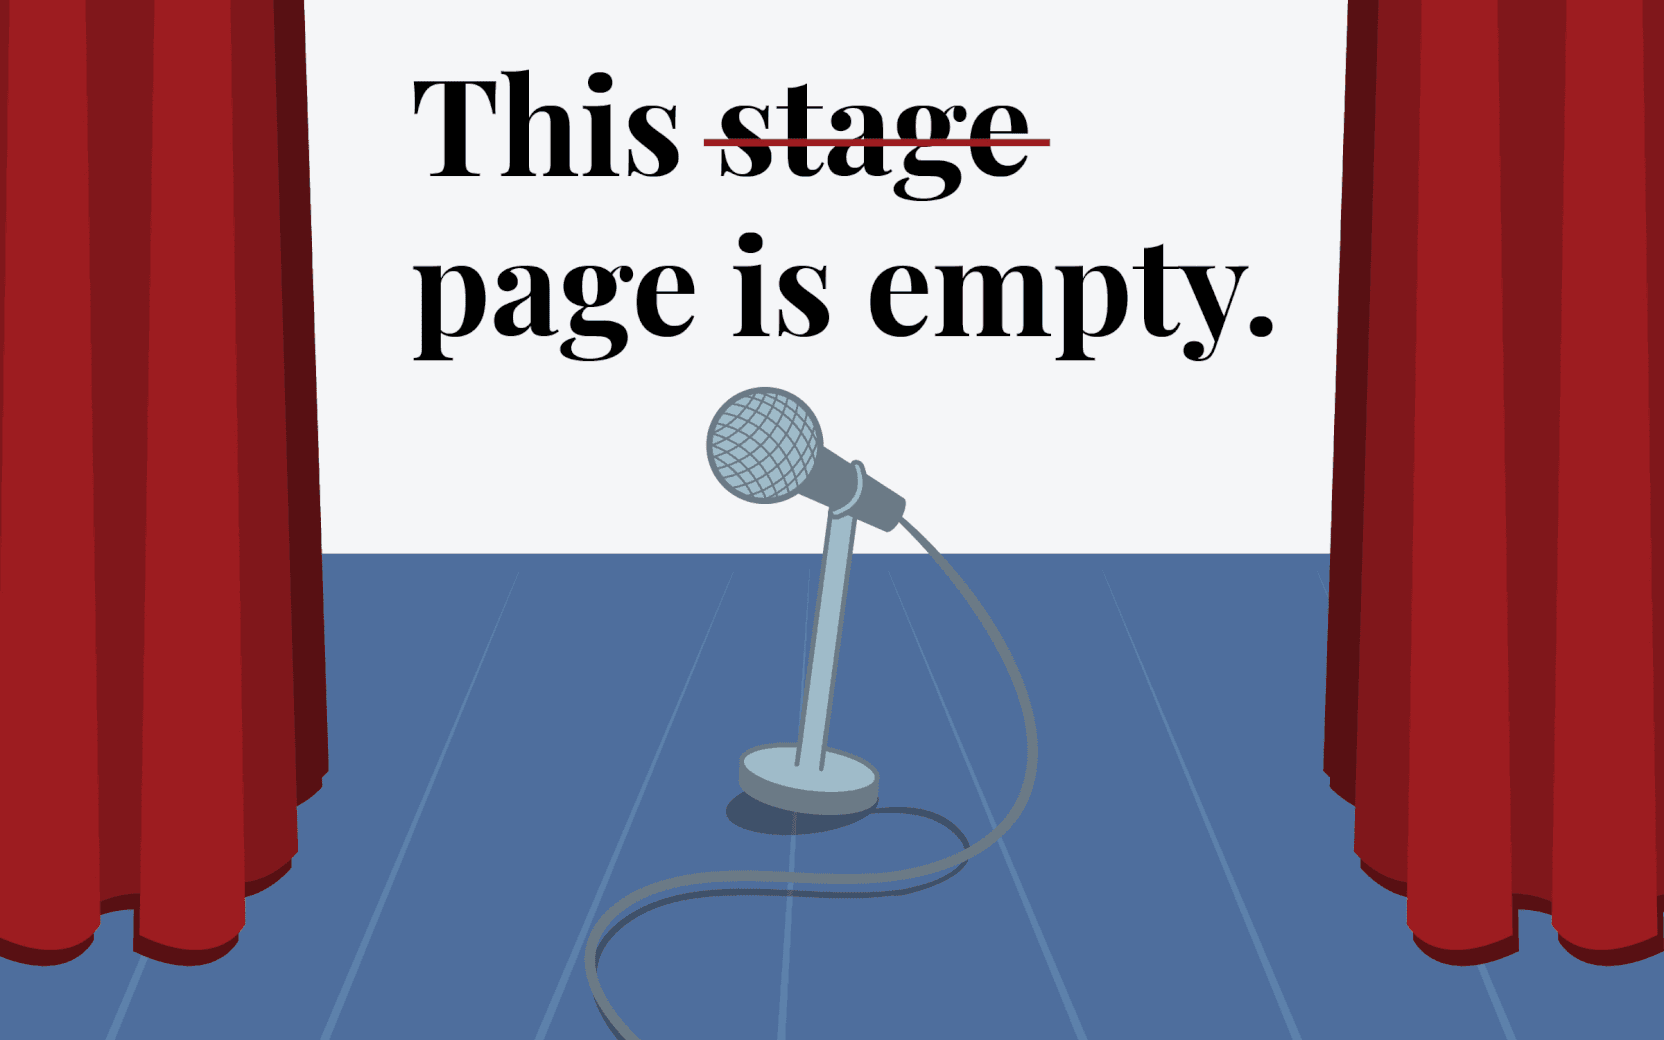 Error 404 - Page Not Found